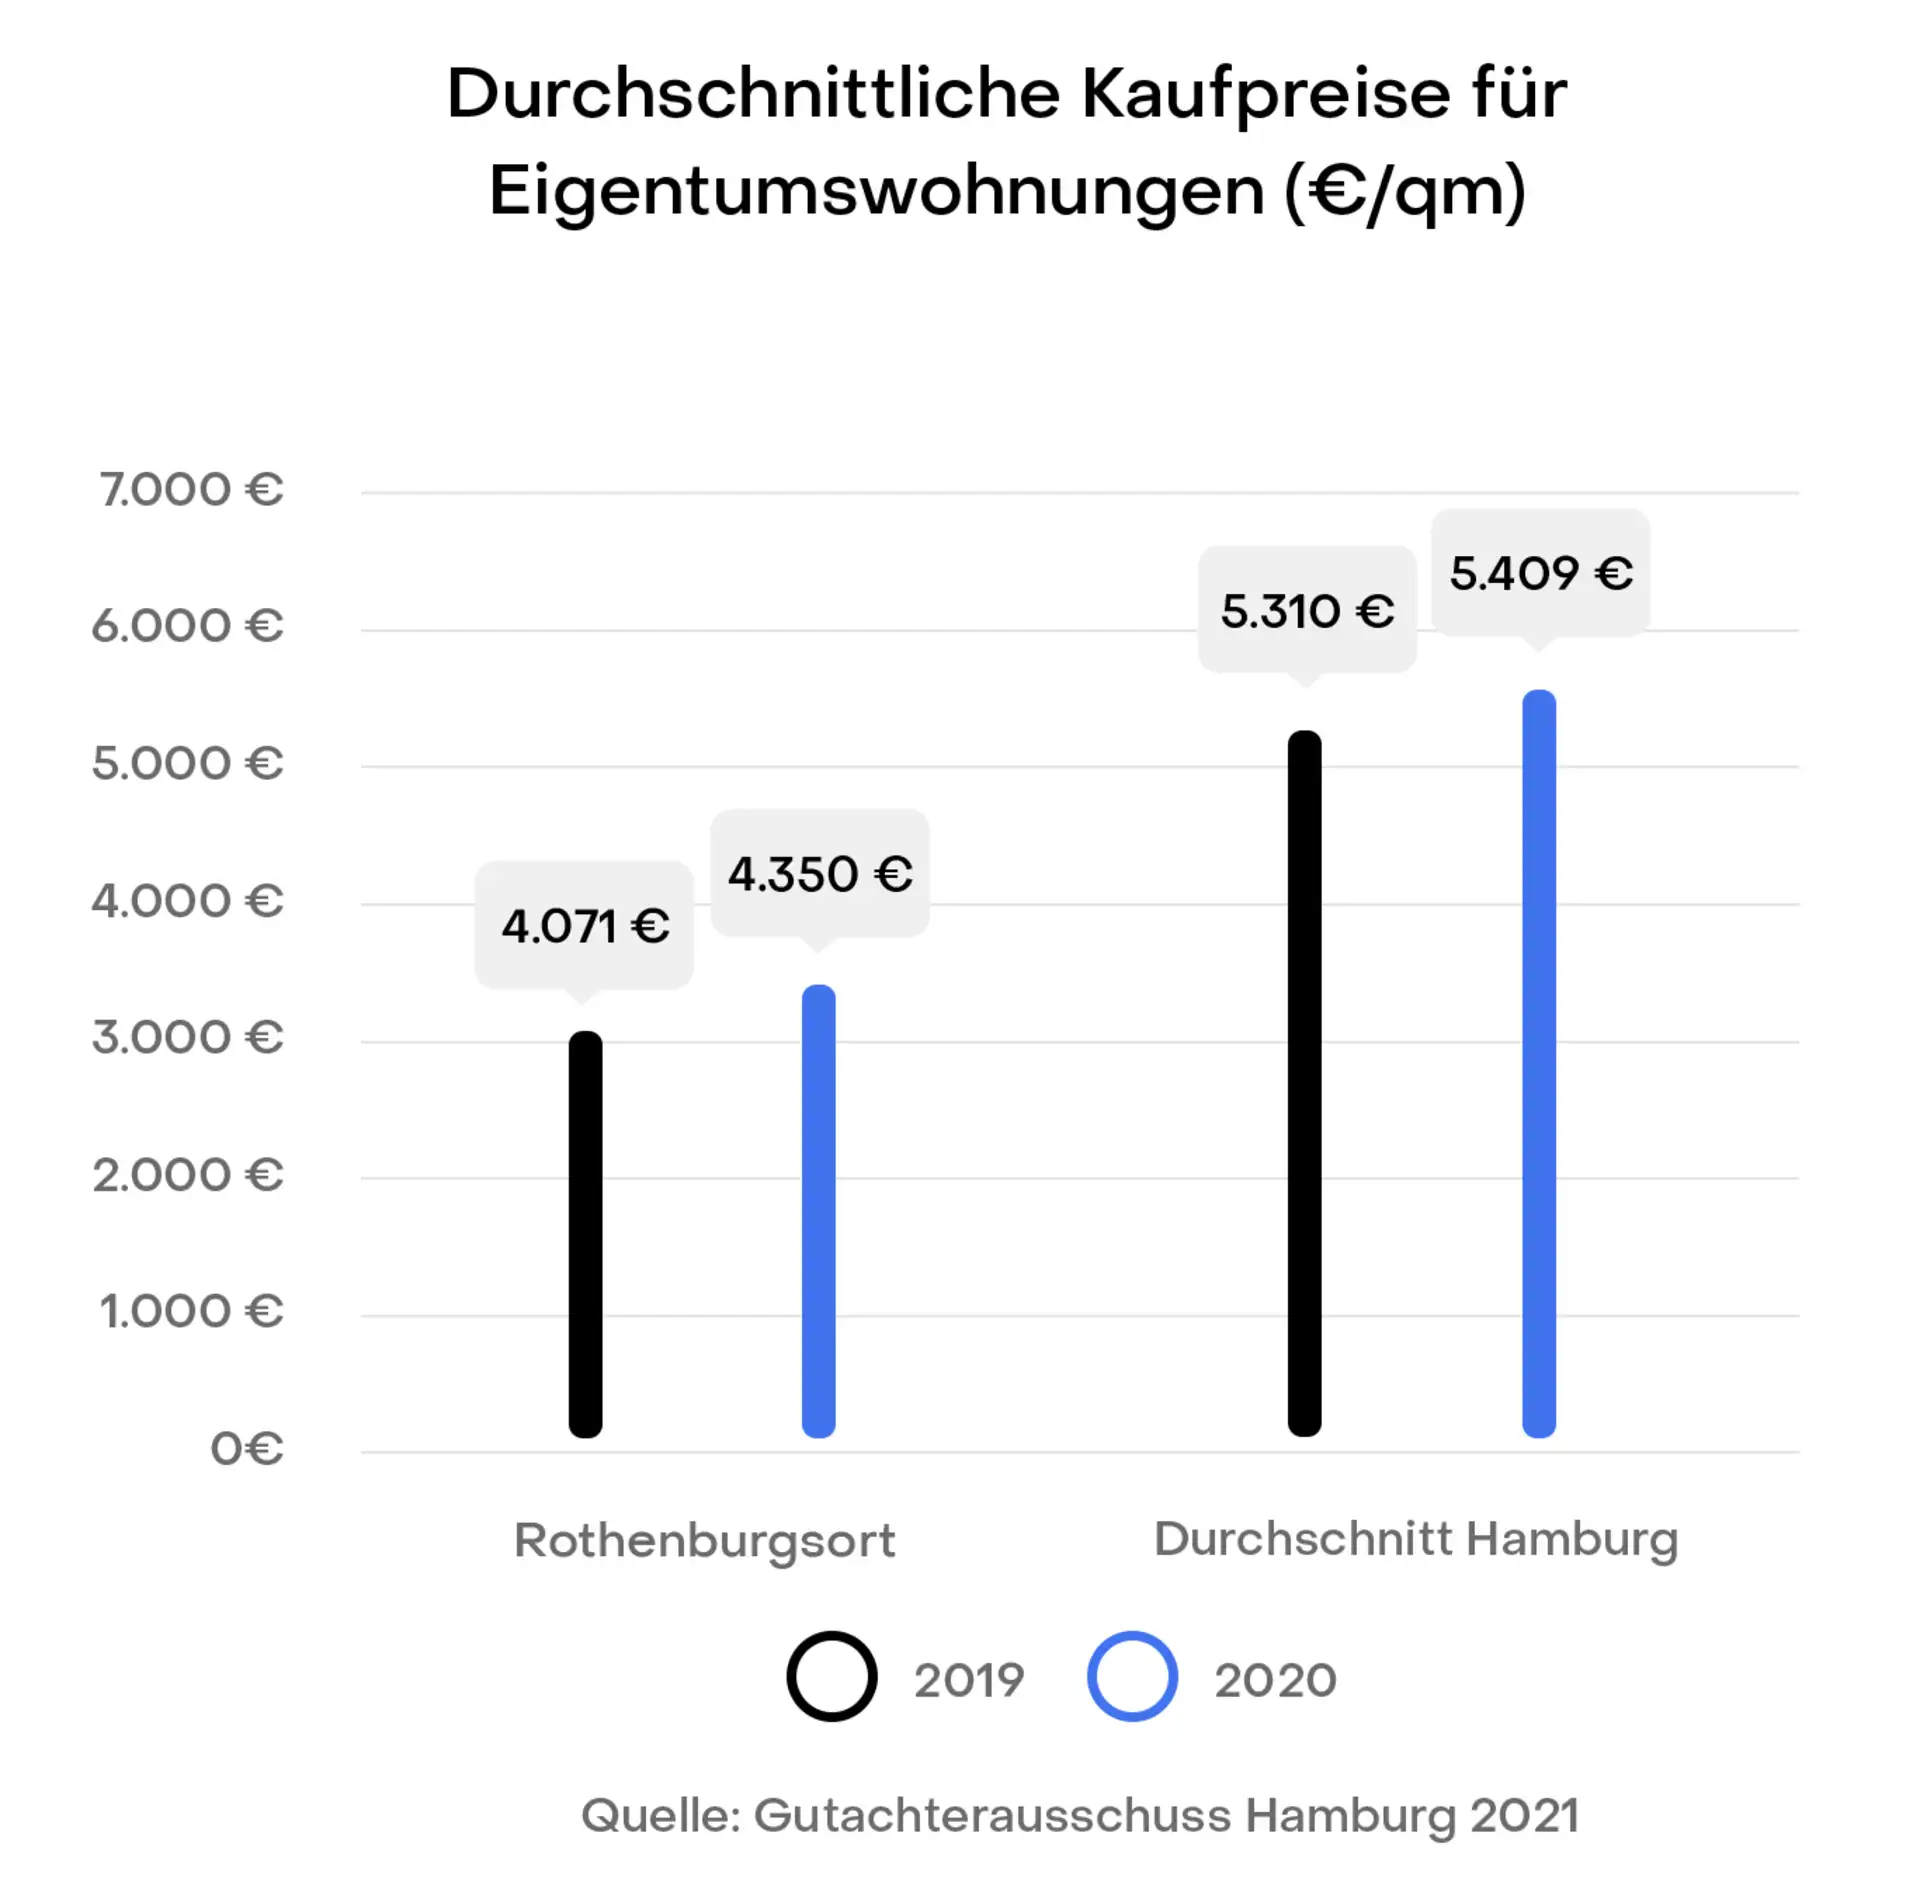 Hamburg Rothenburgsort Preisentwicklung Immobilien Kaufpreise
Gutachterausschuss